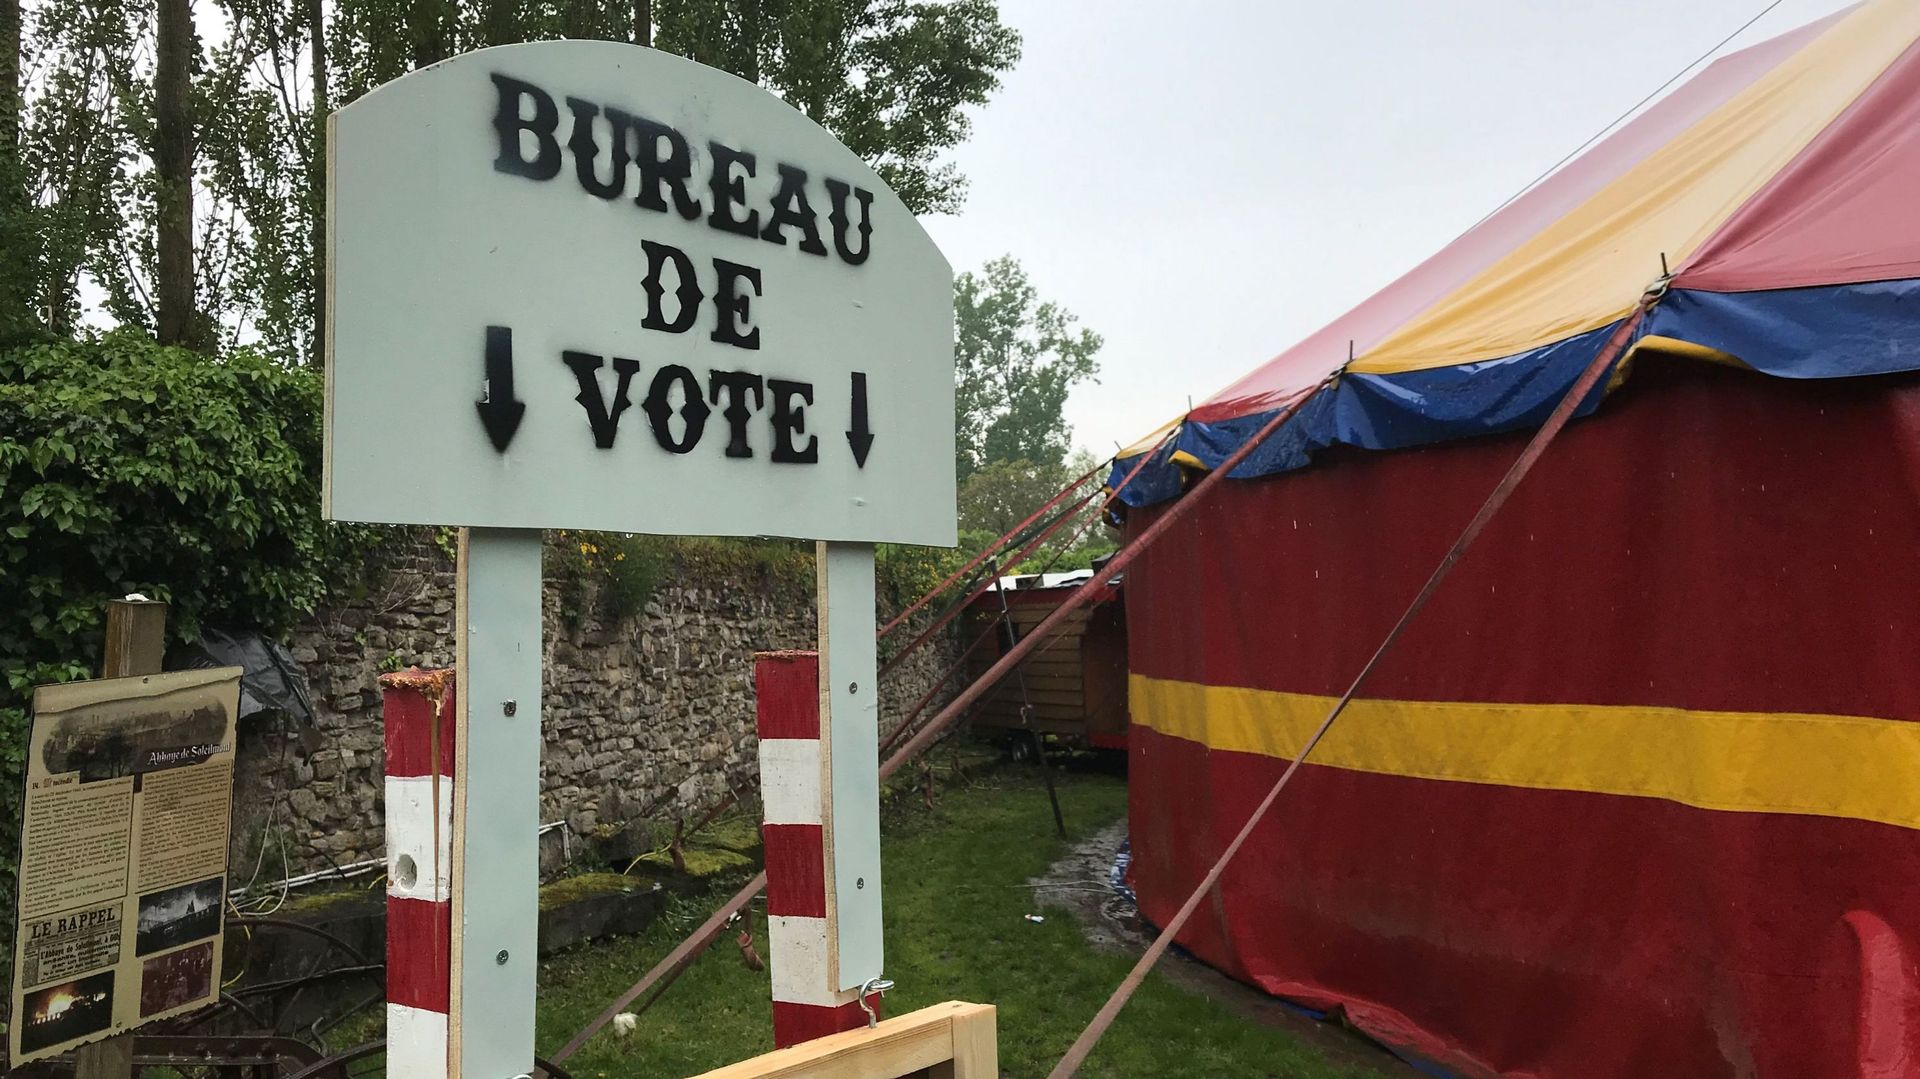 L'école du cirque de Charleroi a choisi les élections comme thème pour sa saison 2018-2019